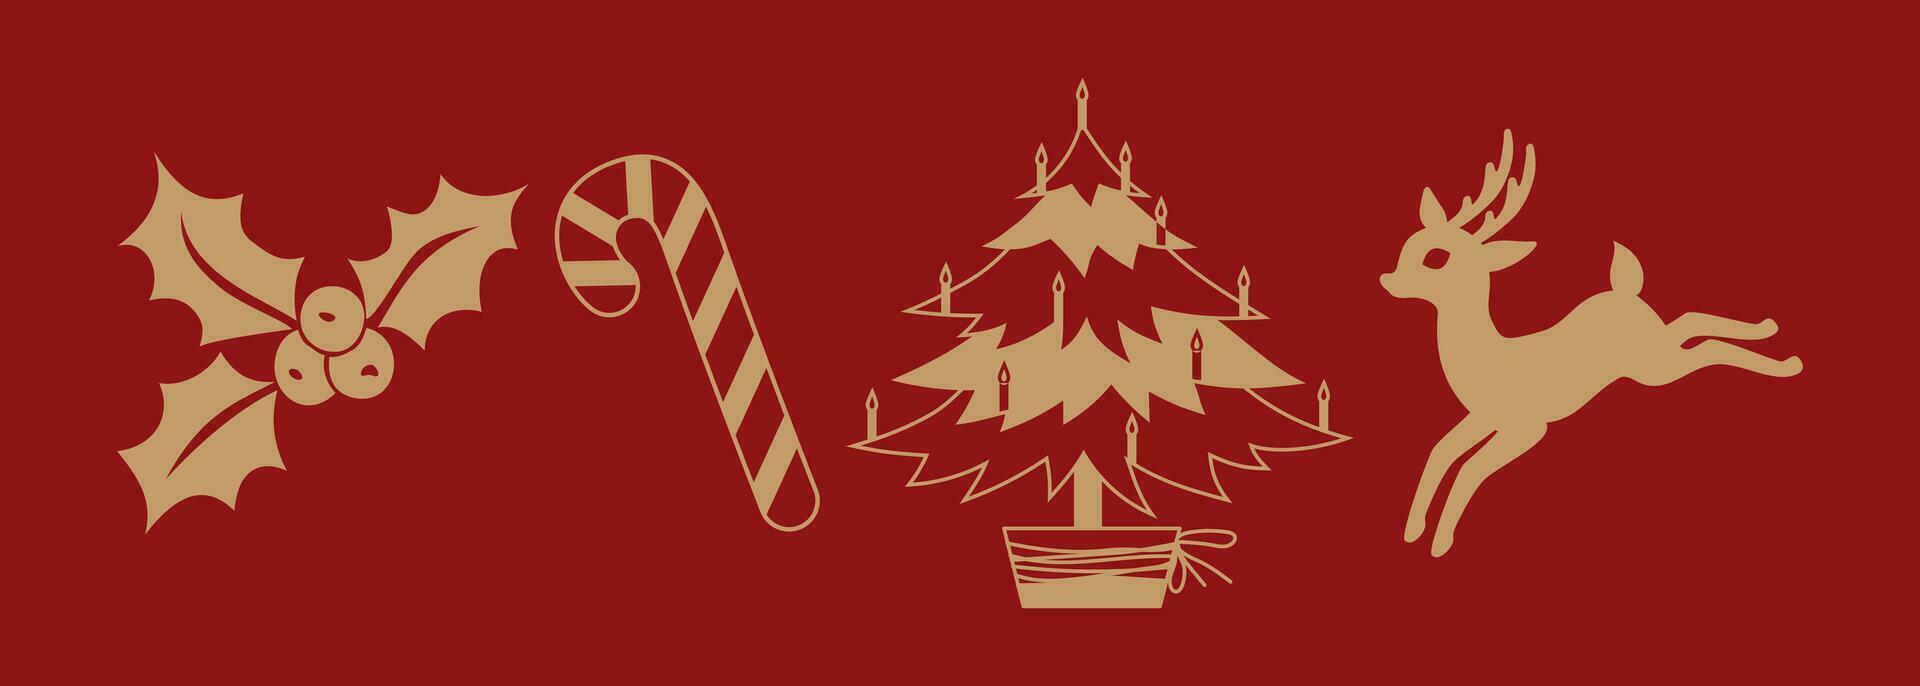 uppsättning av jul och ny år ikoner och symboler på en röd bakgrund. ren, godis sockerrör, järnek bär, jul träd. dekorativ element för festlig design av vinter- holidays.vector illustration. vektor